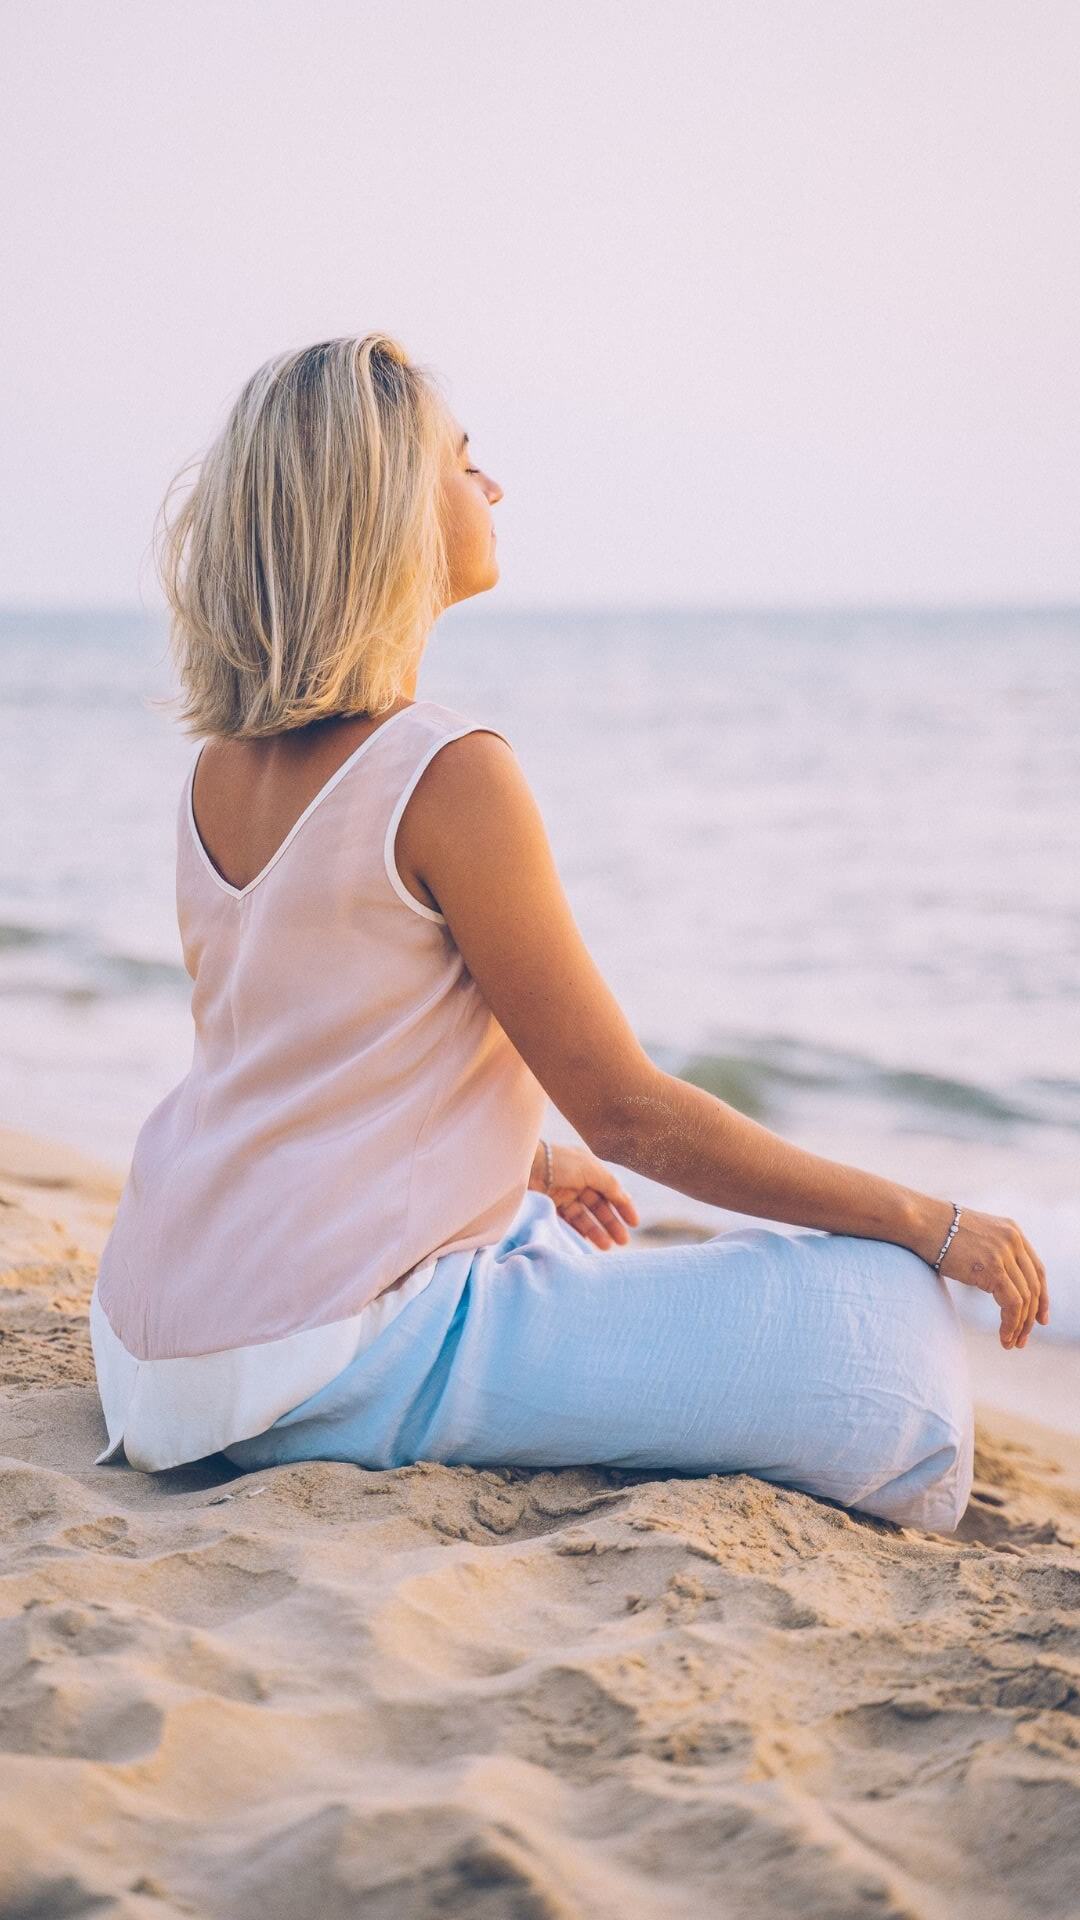 Dies ist ein Foto, das eine Frau zeigt, die im Sand sitzt und meditiert. Sie hat halblange blonde Haare und hat die Augen geschlossen. Sie ist dem Wasser zugewandt, trägt ein rosa Oberteil und eine helle Hose.